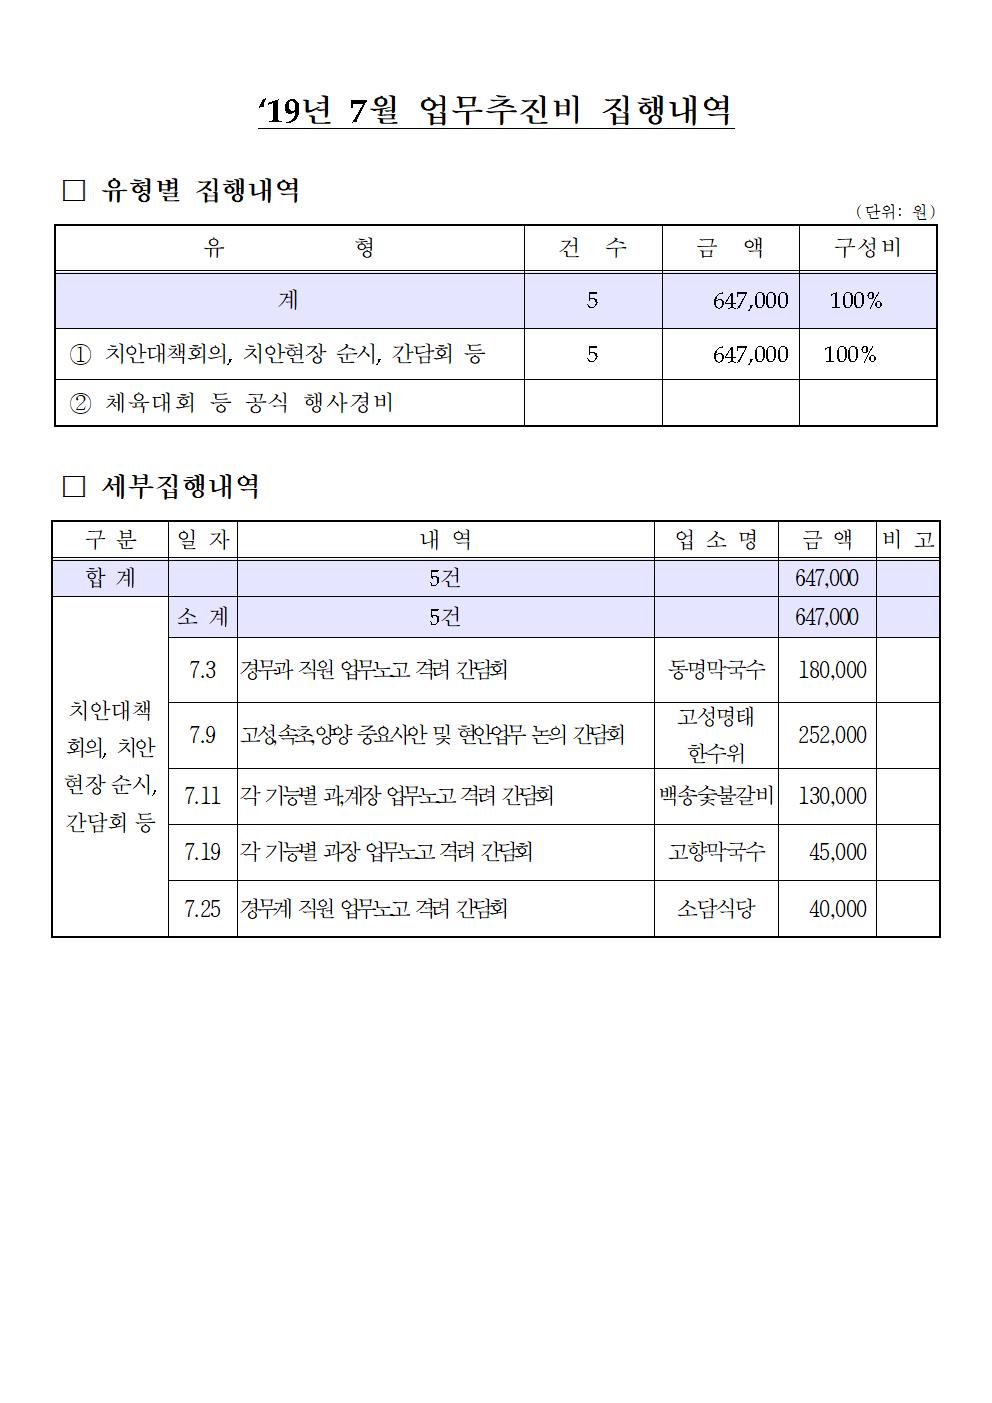 2019년 7월 업무추진비 집행내역-2019년 7월중 업무추진비(고성)001